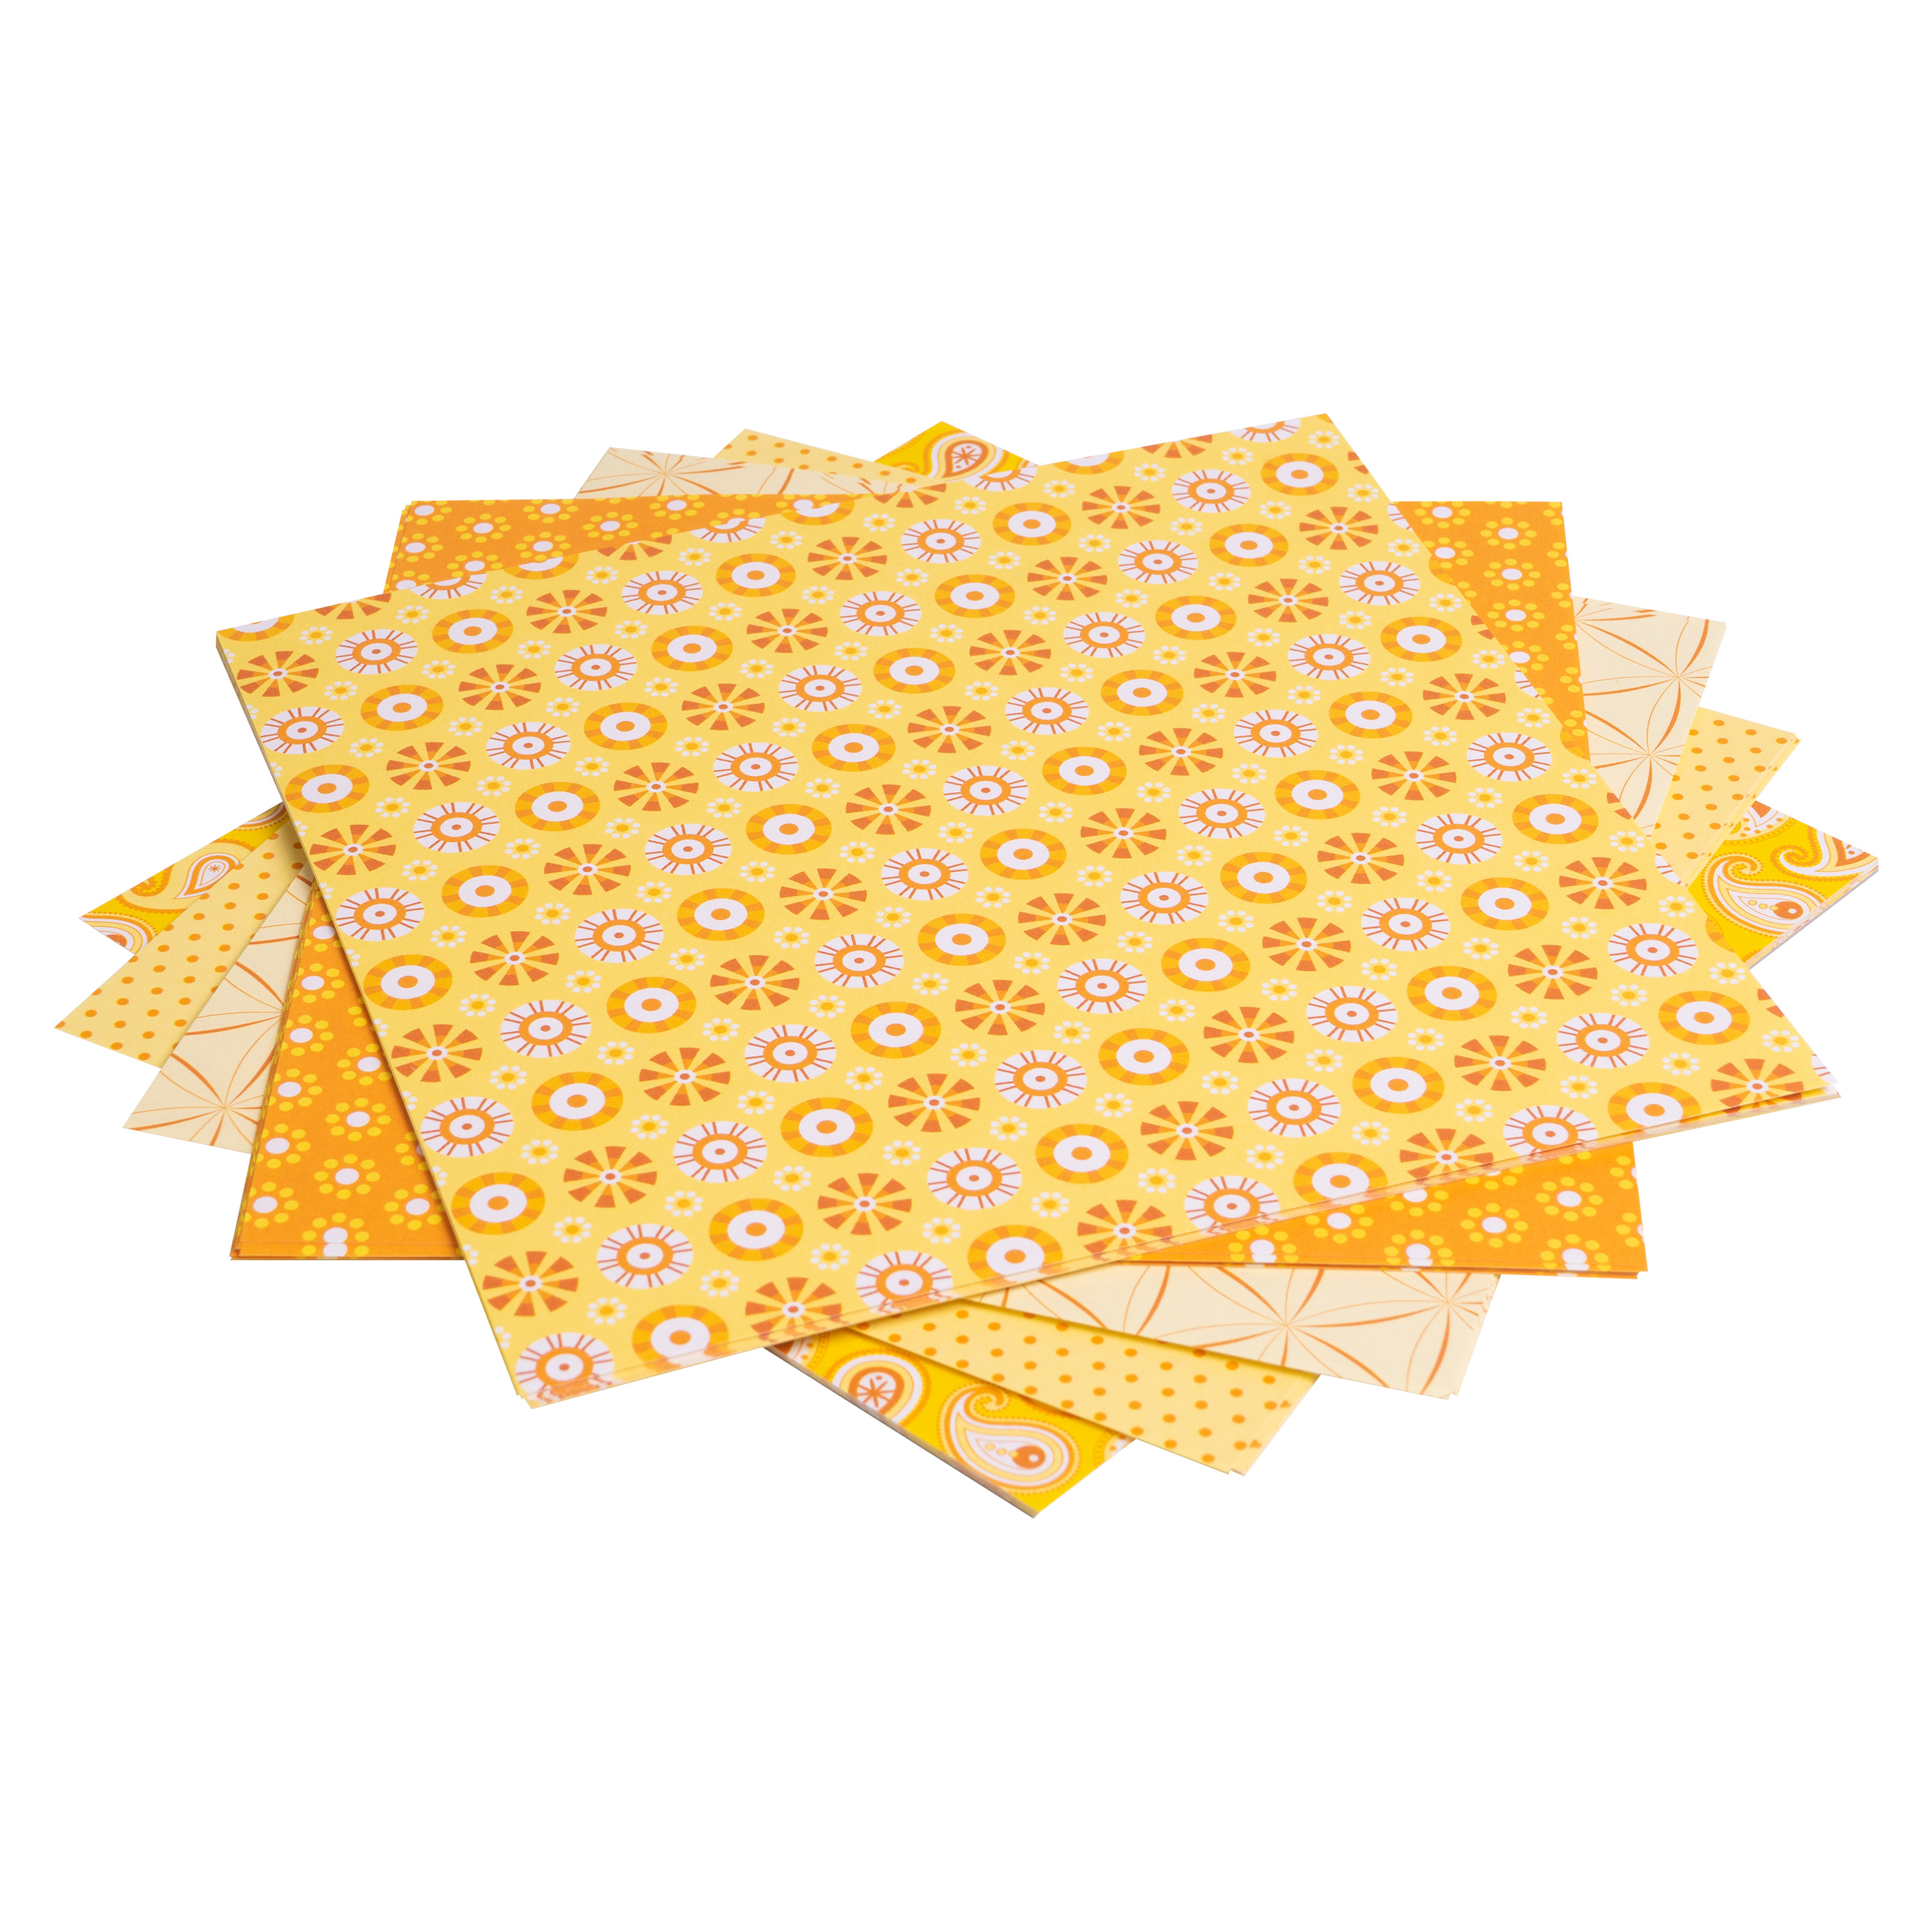 Origami Motiv-Faltblätter 'Basics', 15 x 15 cm, gelb